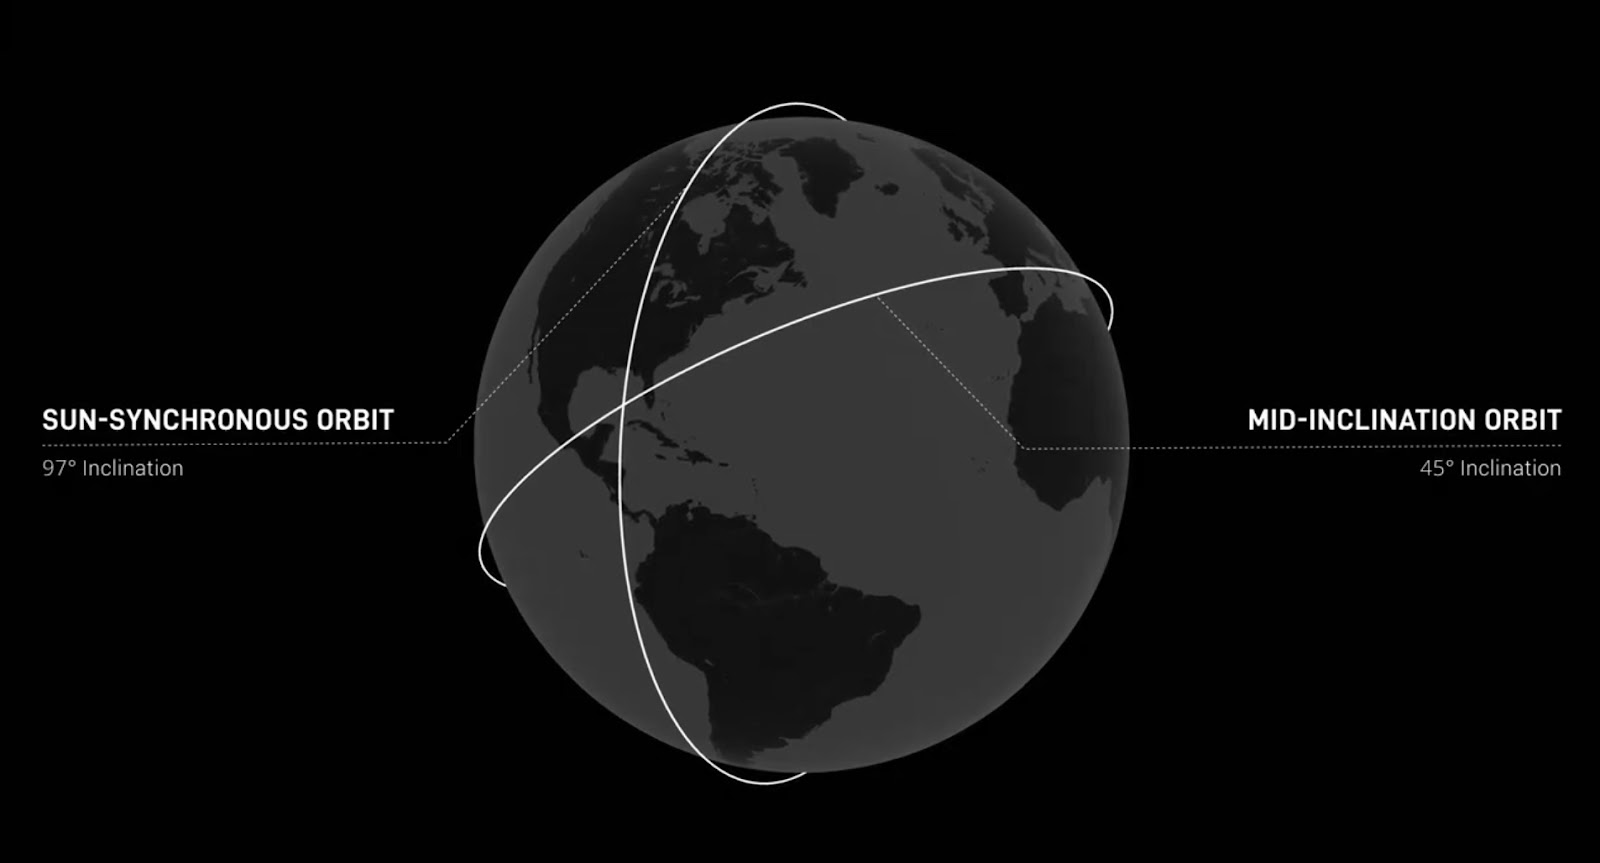 Ilustración de la Tierra que muestra dos órbitas de satélites: una órbita heliosincrónica con un ángulo de inclinación de 97 grados y una órbita mesoinclinada con un ángulo de 45 grados.